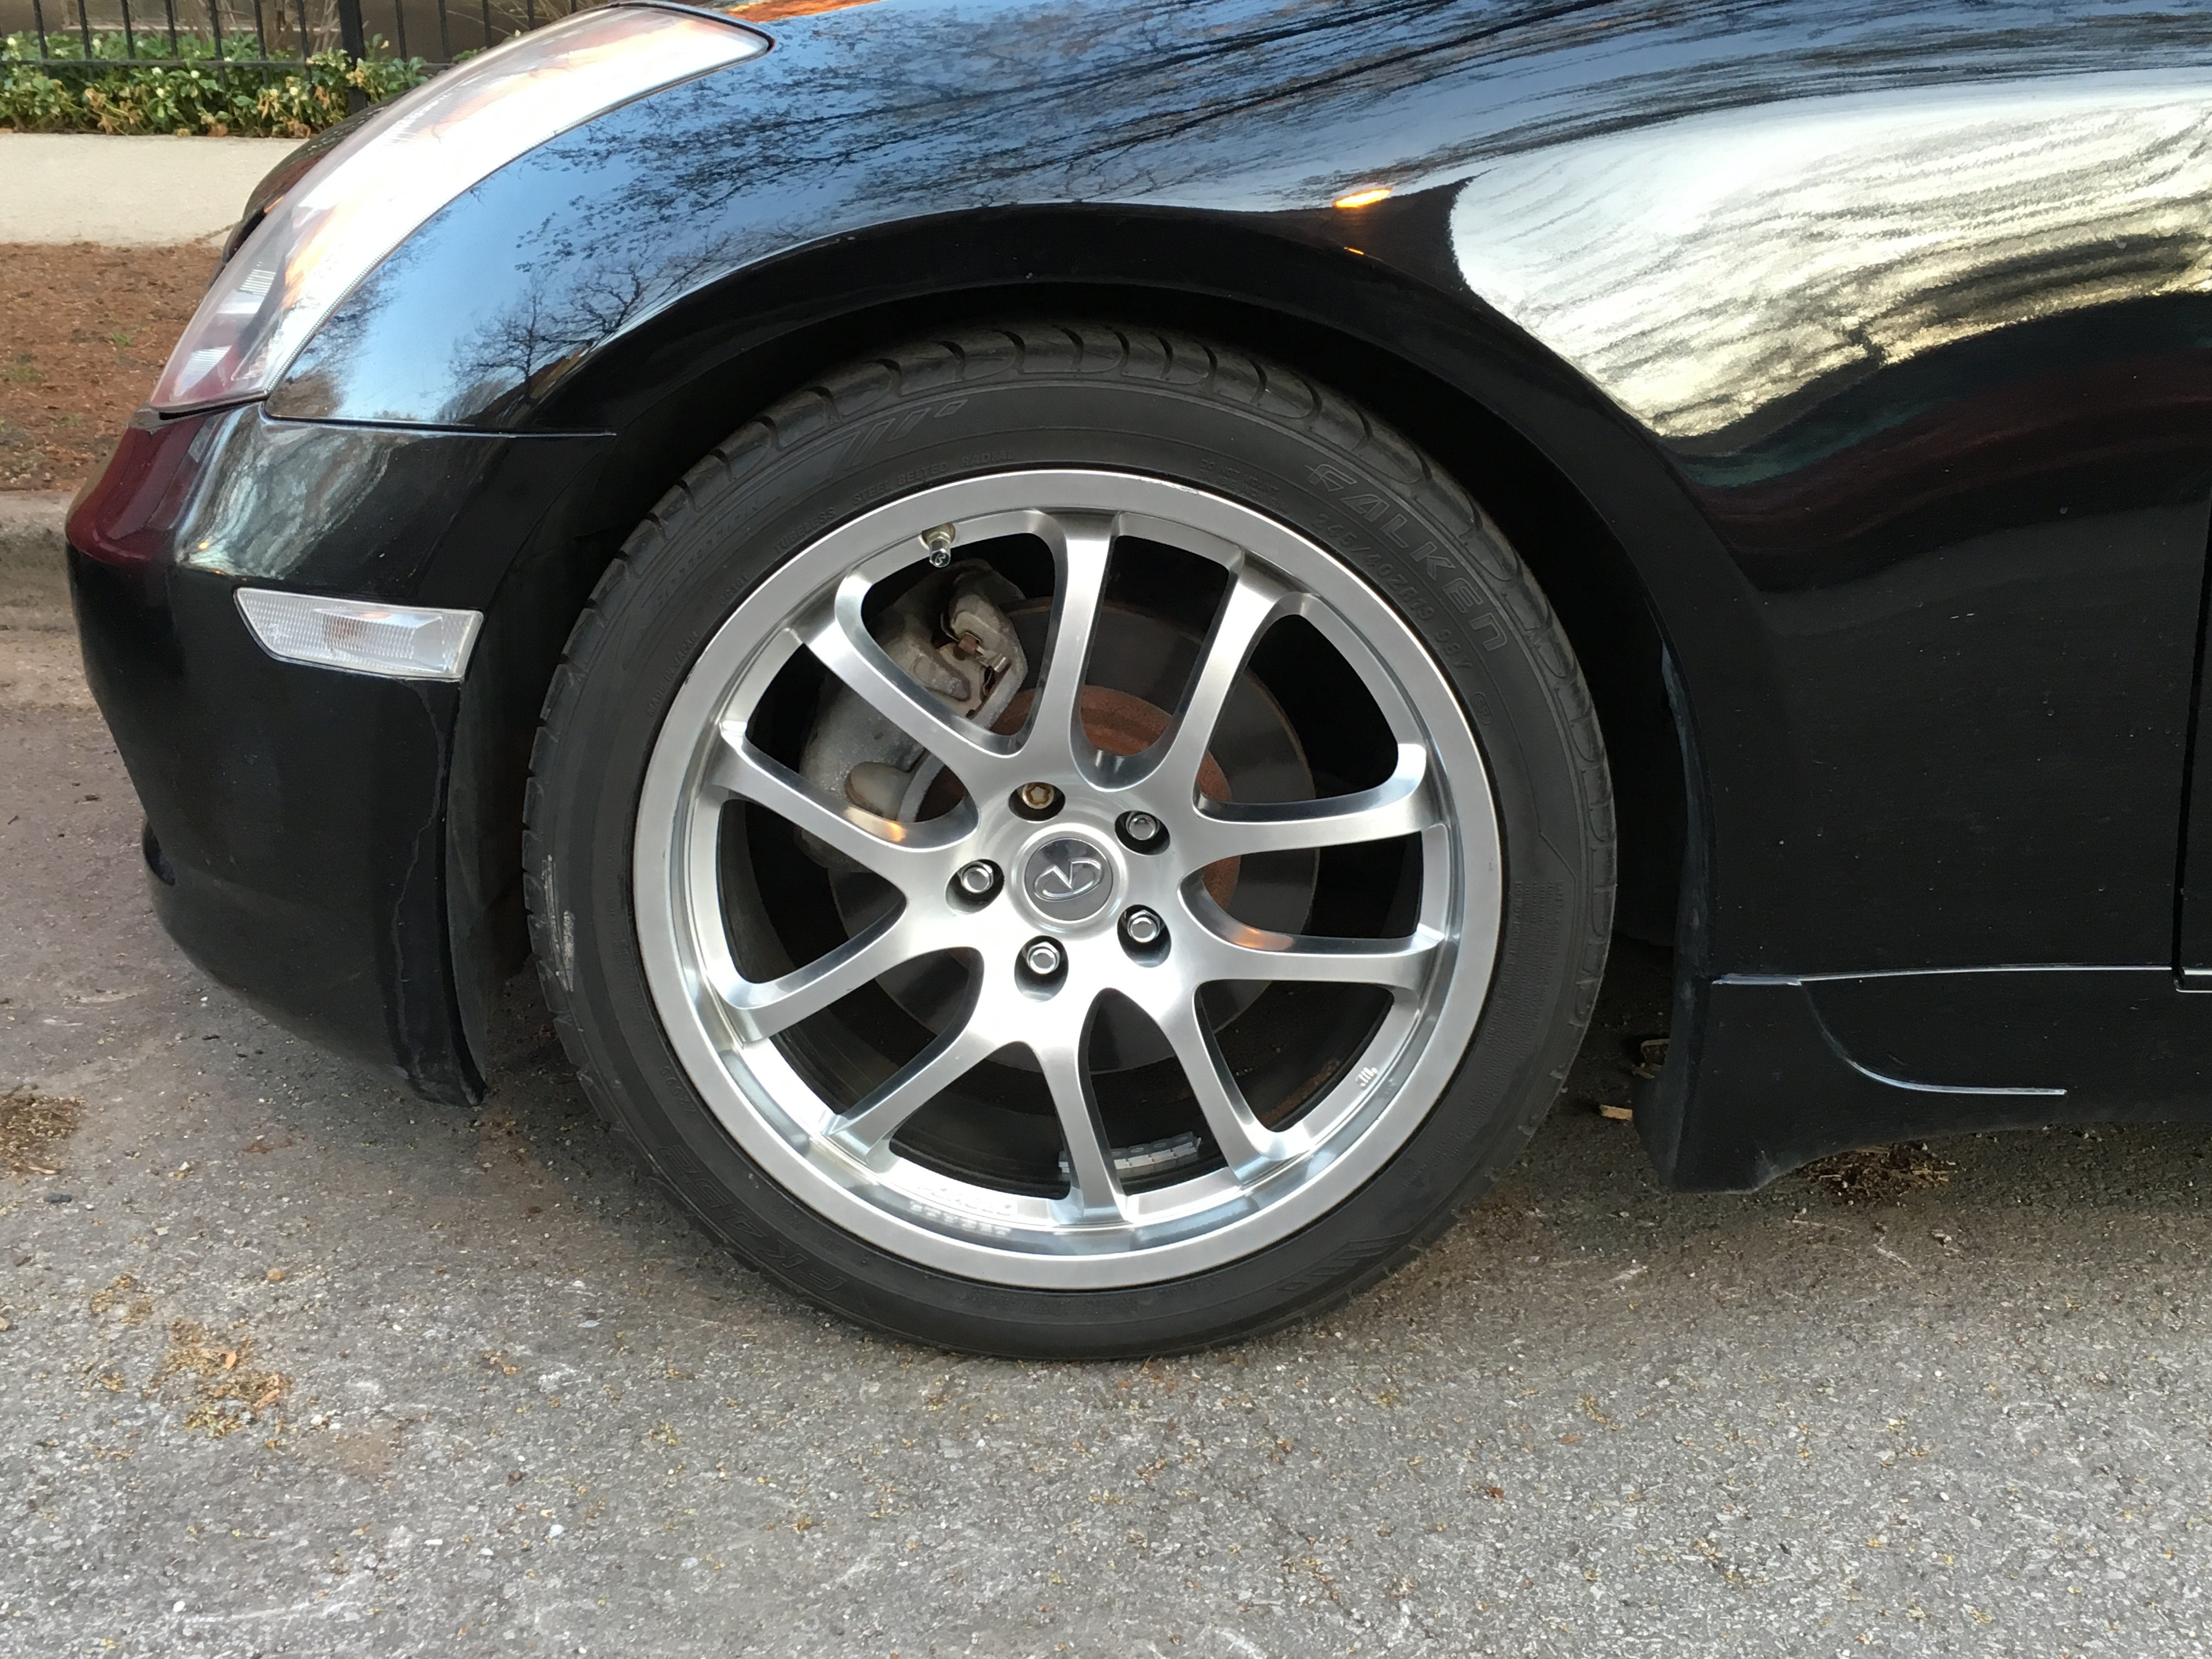 35 vs 40 sidewall tires & ride comfort - Rennlist - Porsche